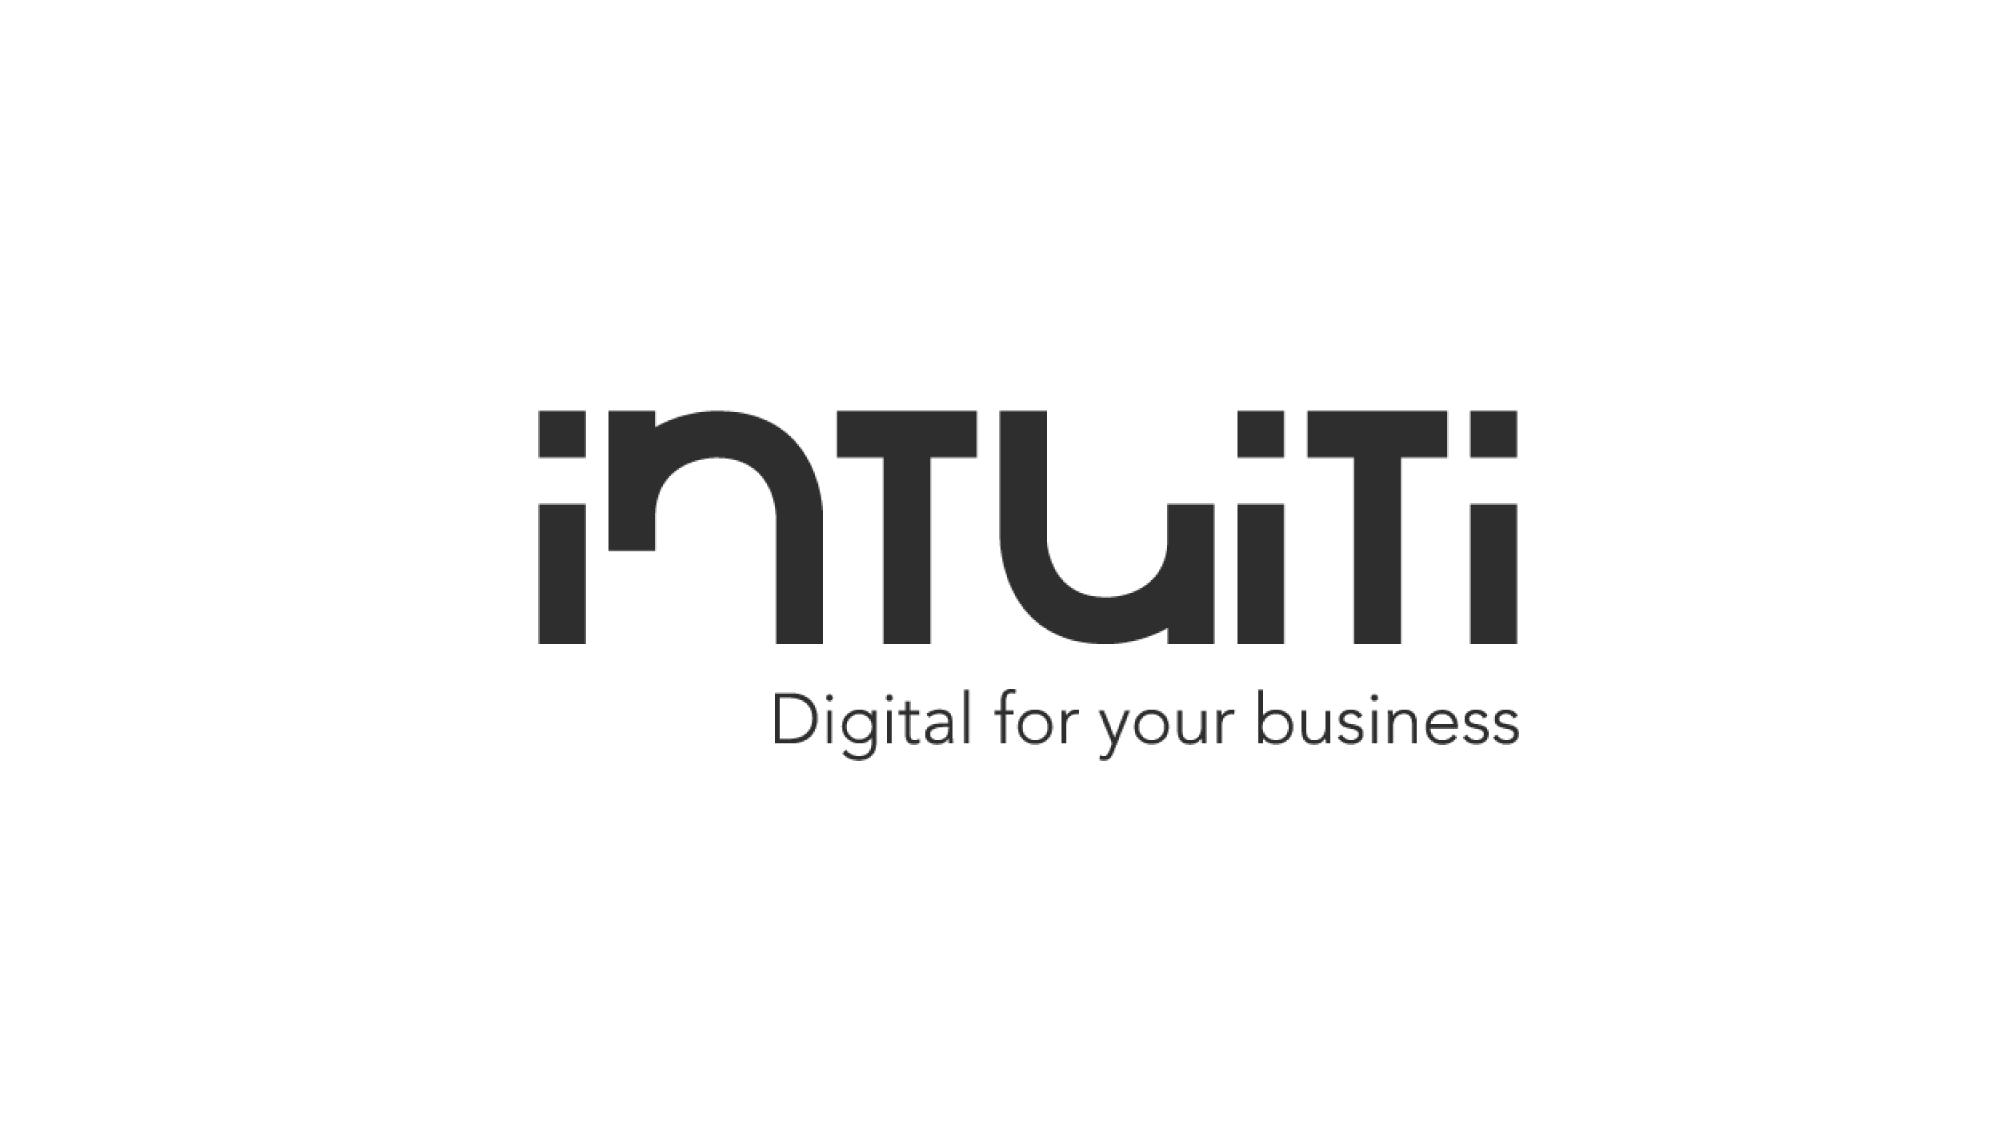 Intuiti agence digitale social selling